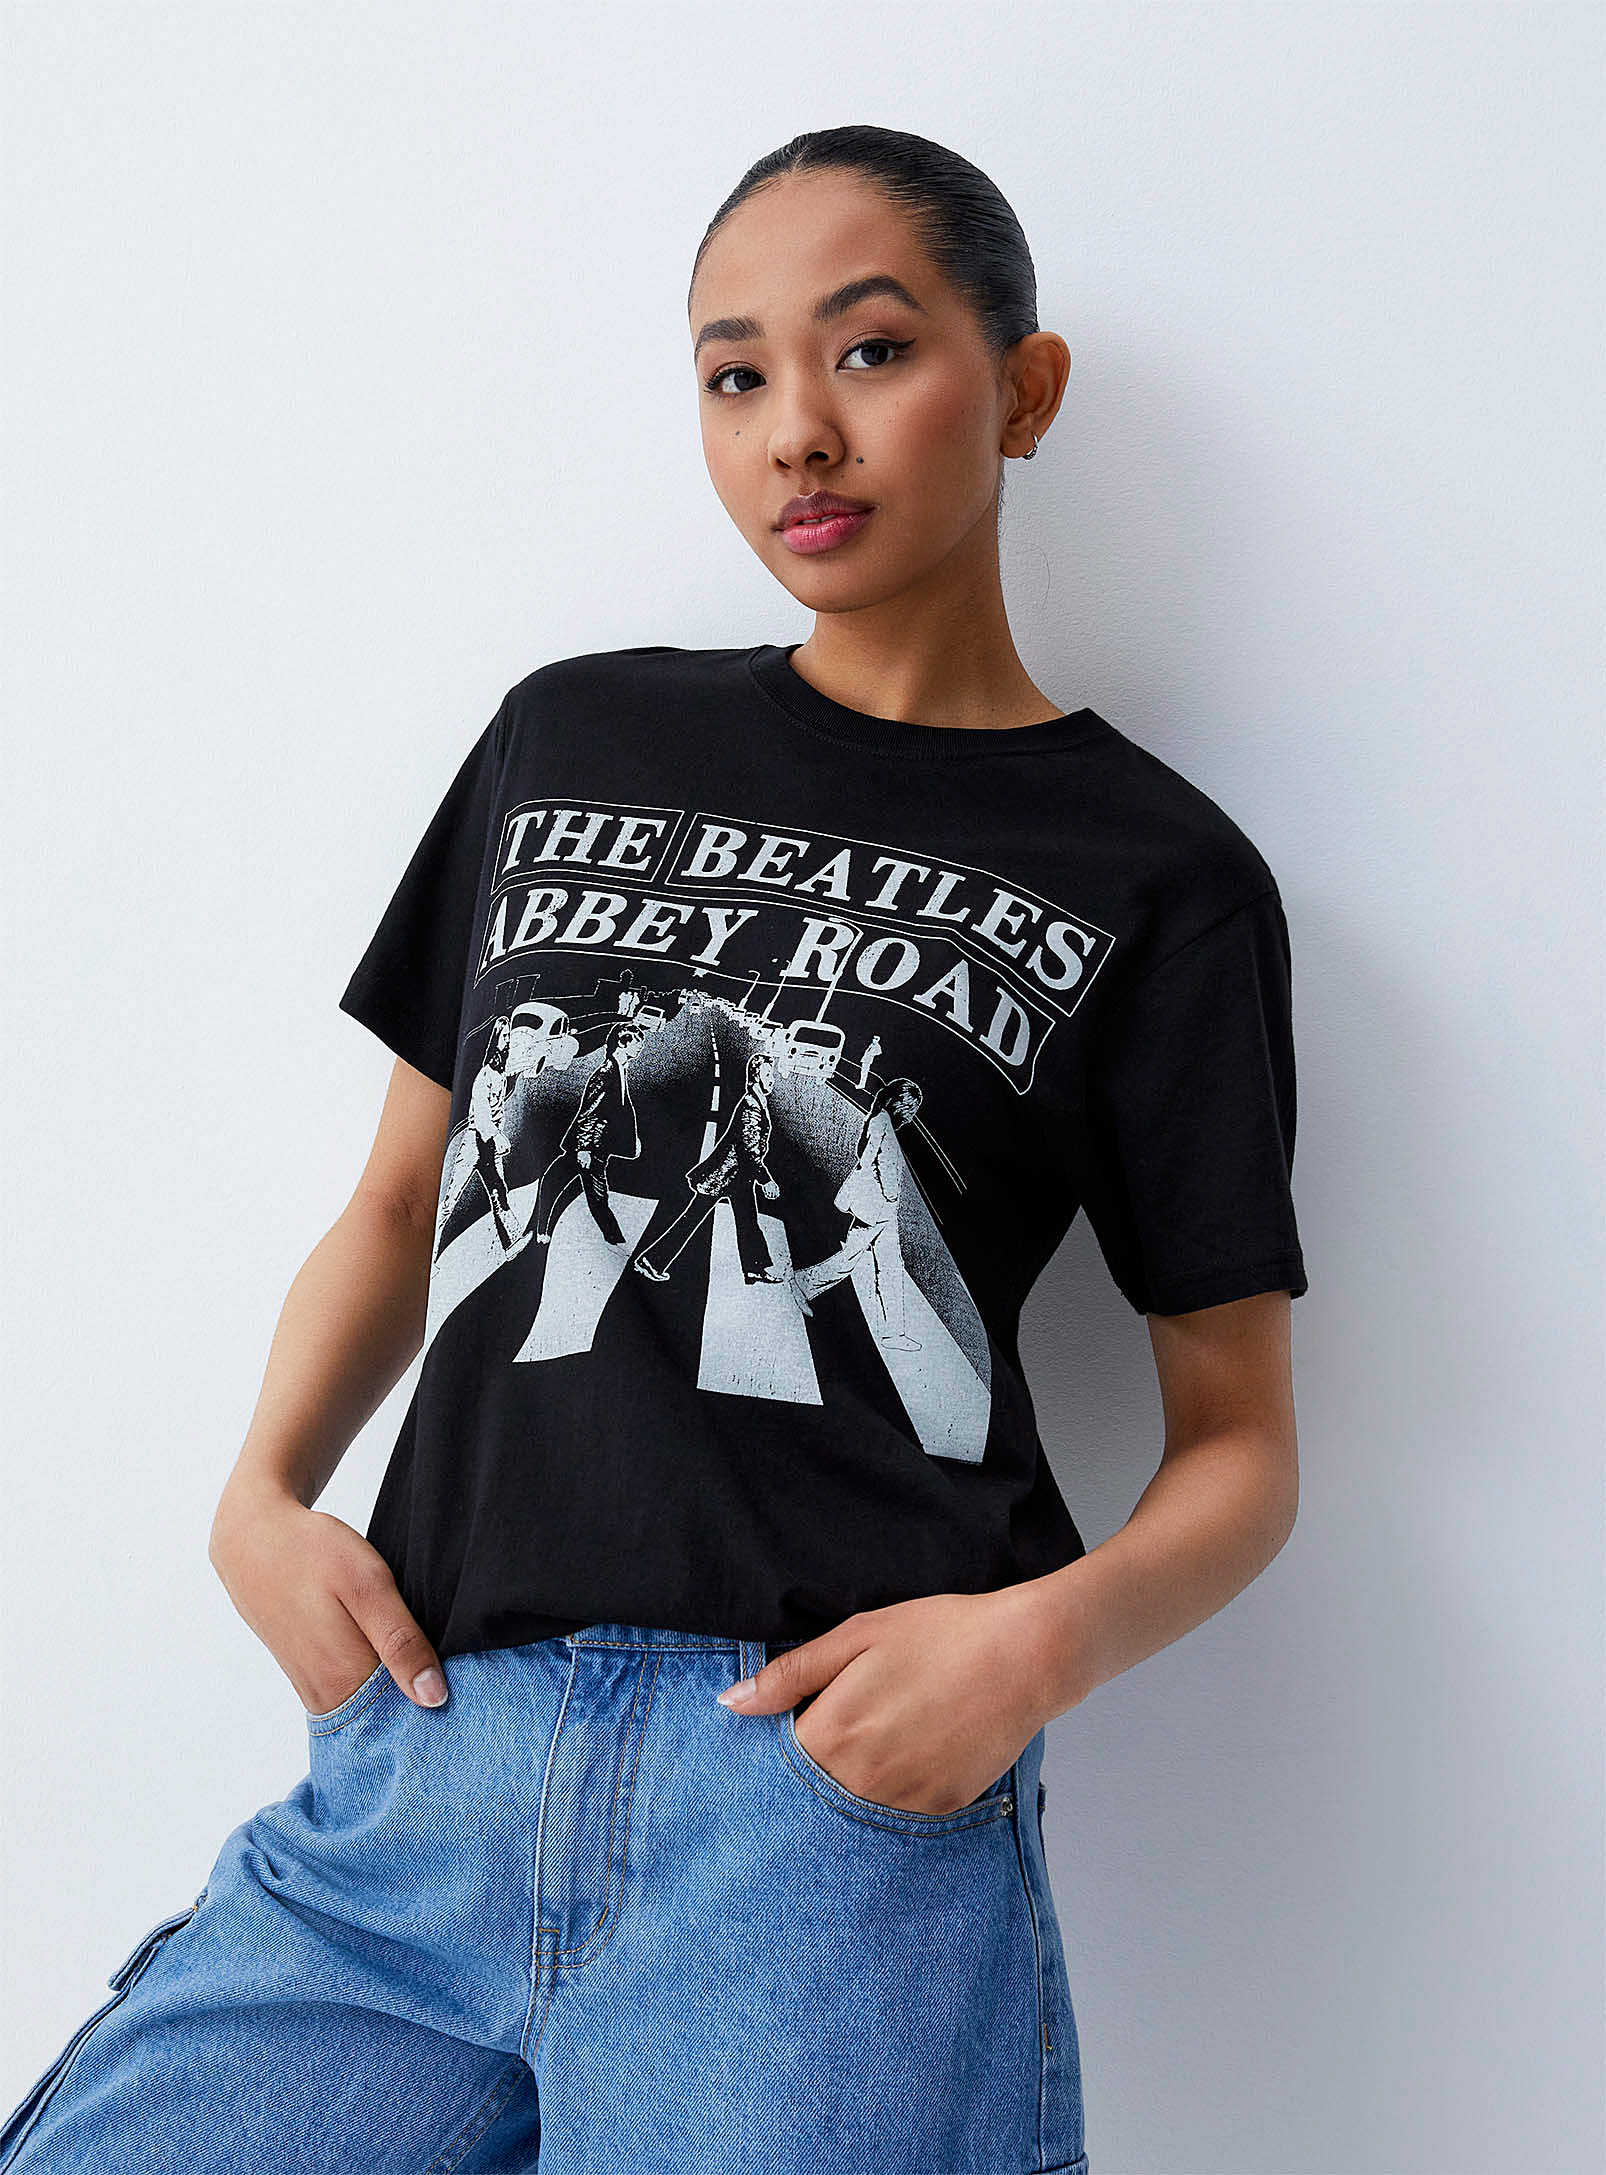 Twik - Women's Abbey Road T-shirt